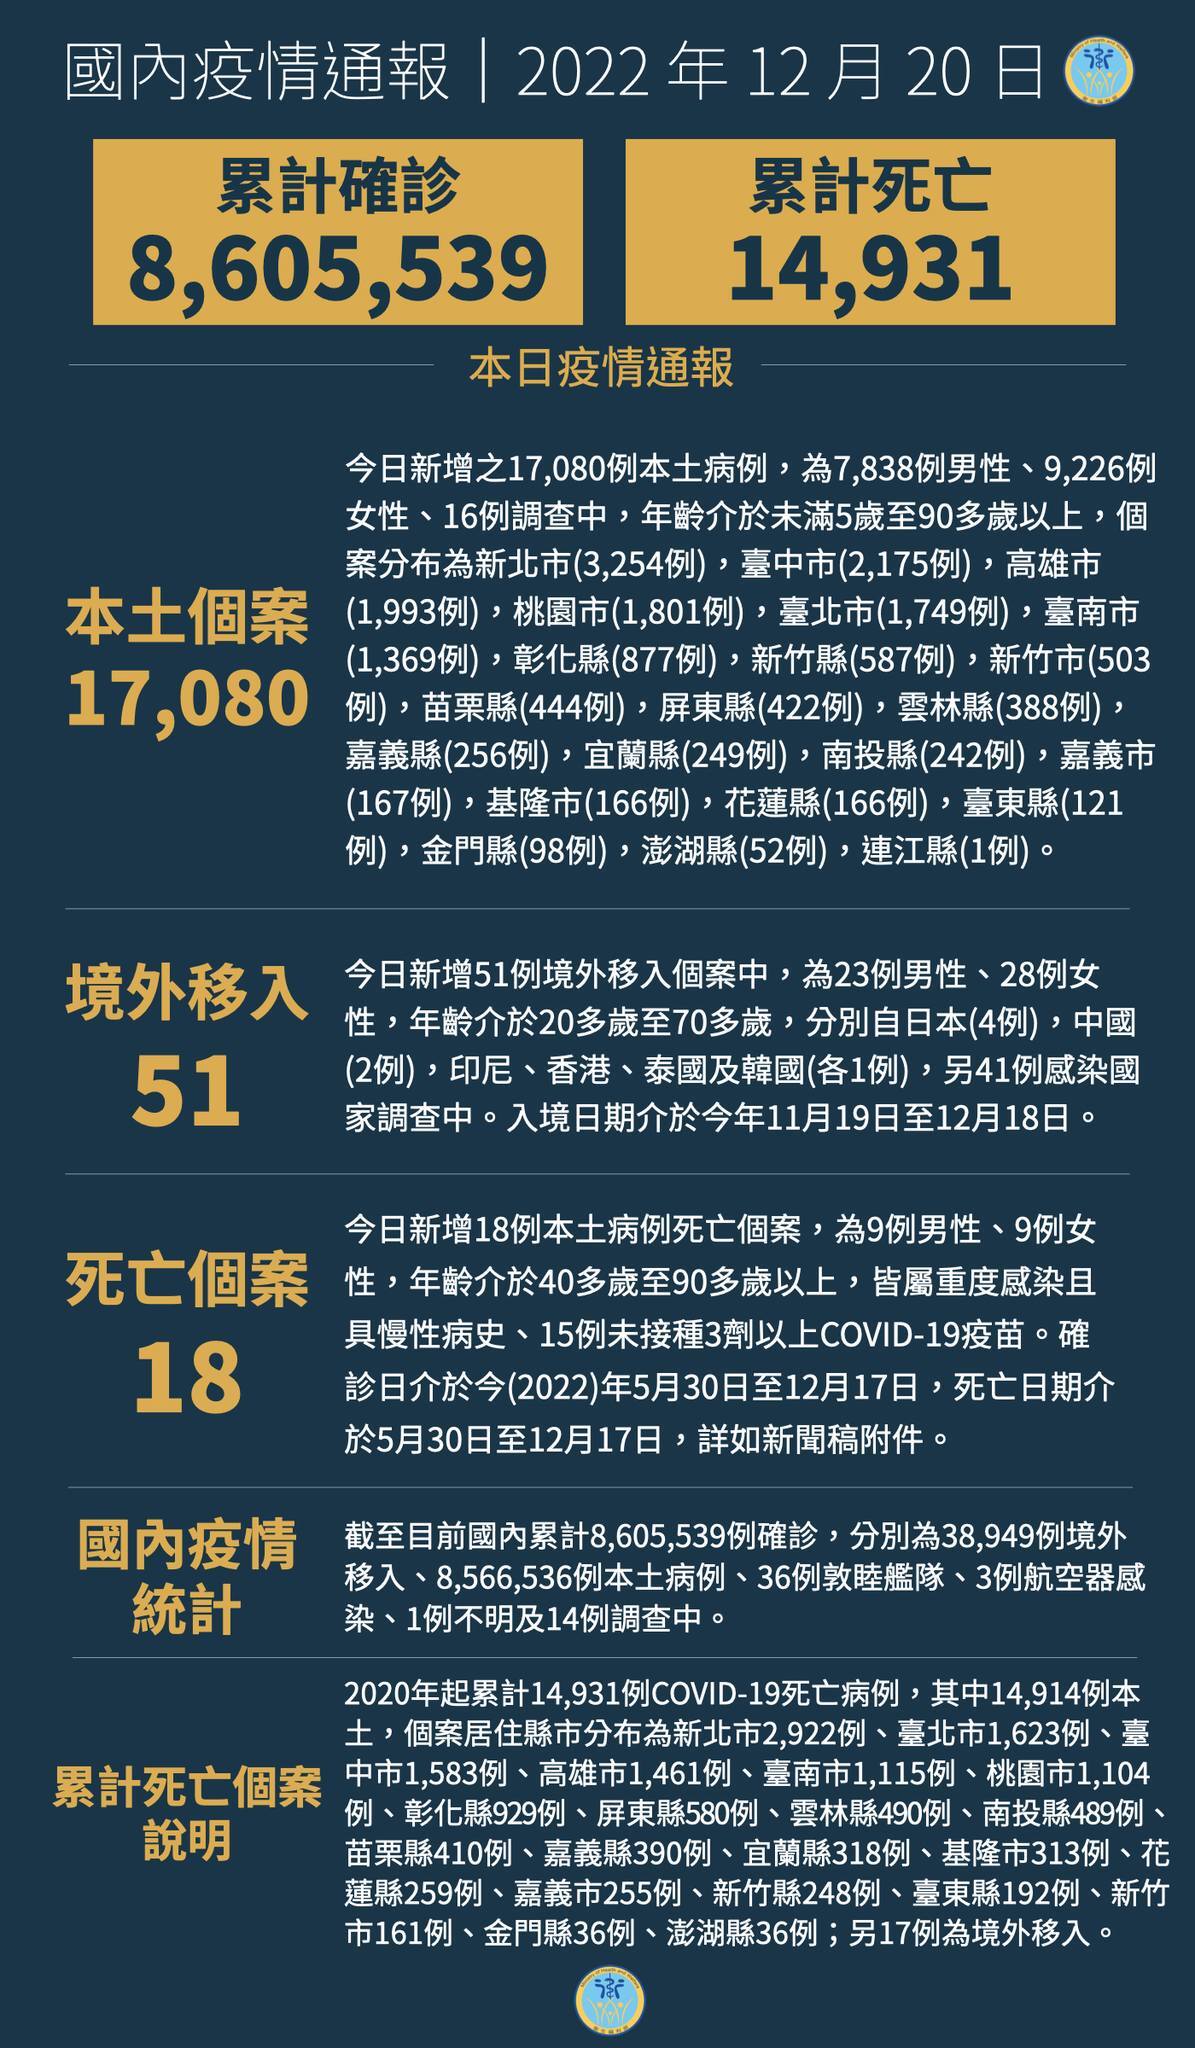 12월 20일 기준 타이완 코로나19 국내발생사례 17,080명, 사망사례 18명 추가